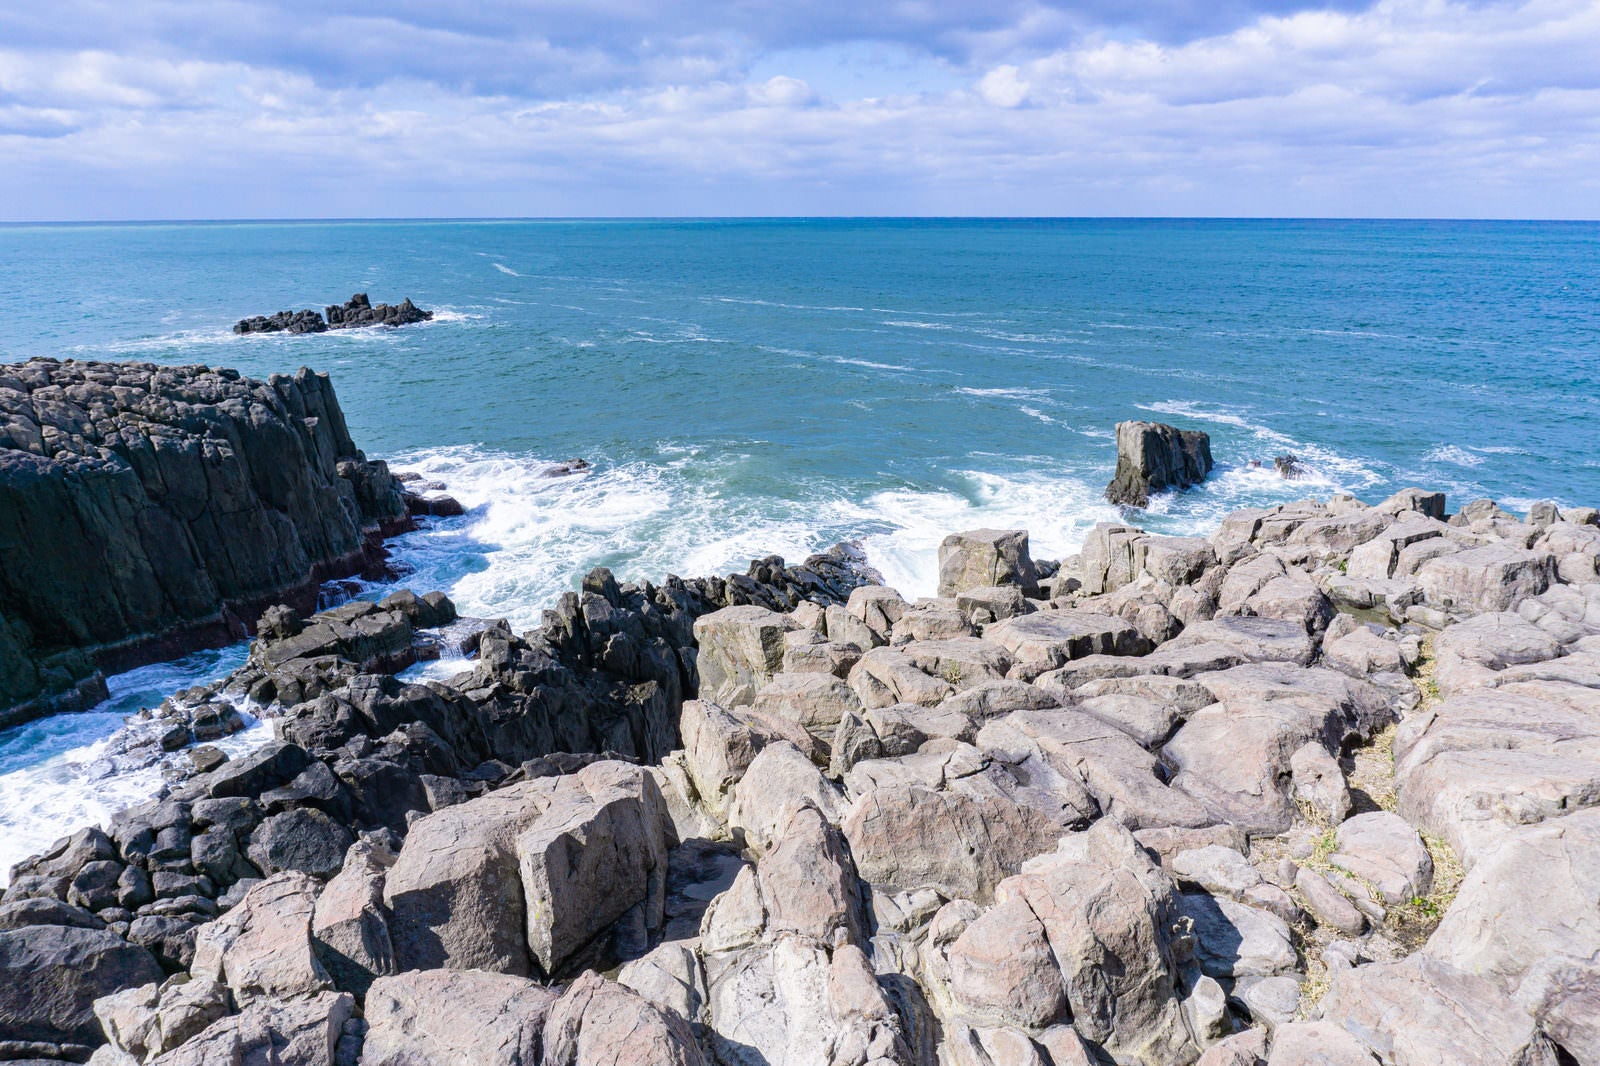 「柱状節理の特徴がわかる柱を束ねたような岩場の上部に立ち日本海を眺める」の写真